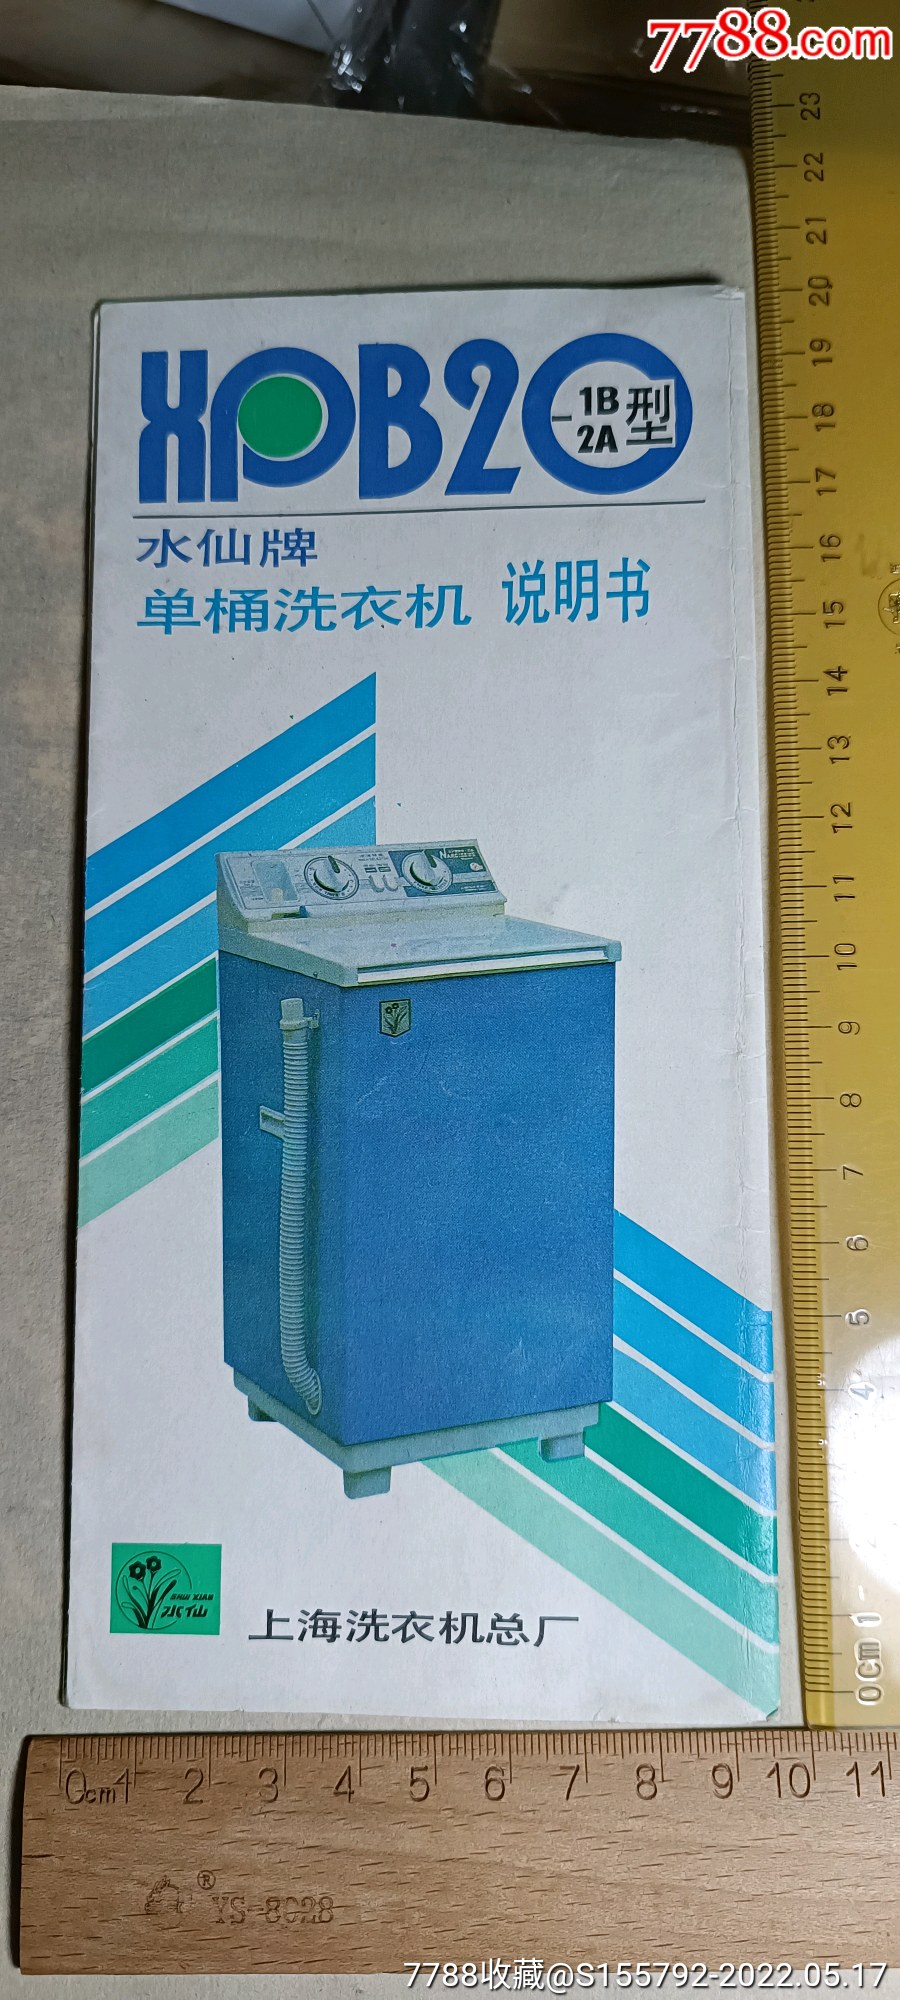 上海水仙牌单桶洗衣机说明书